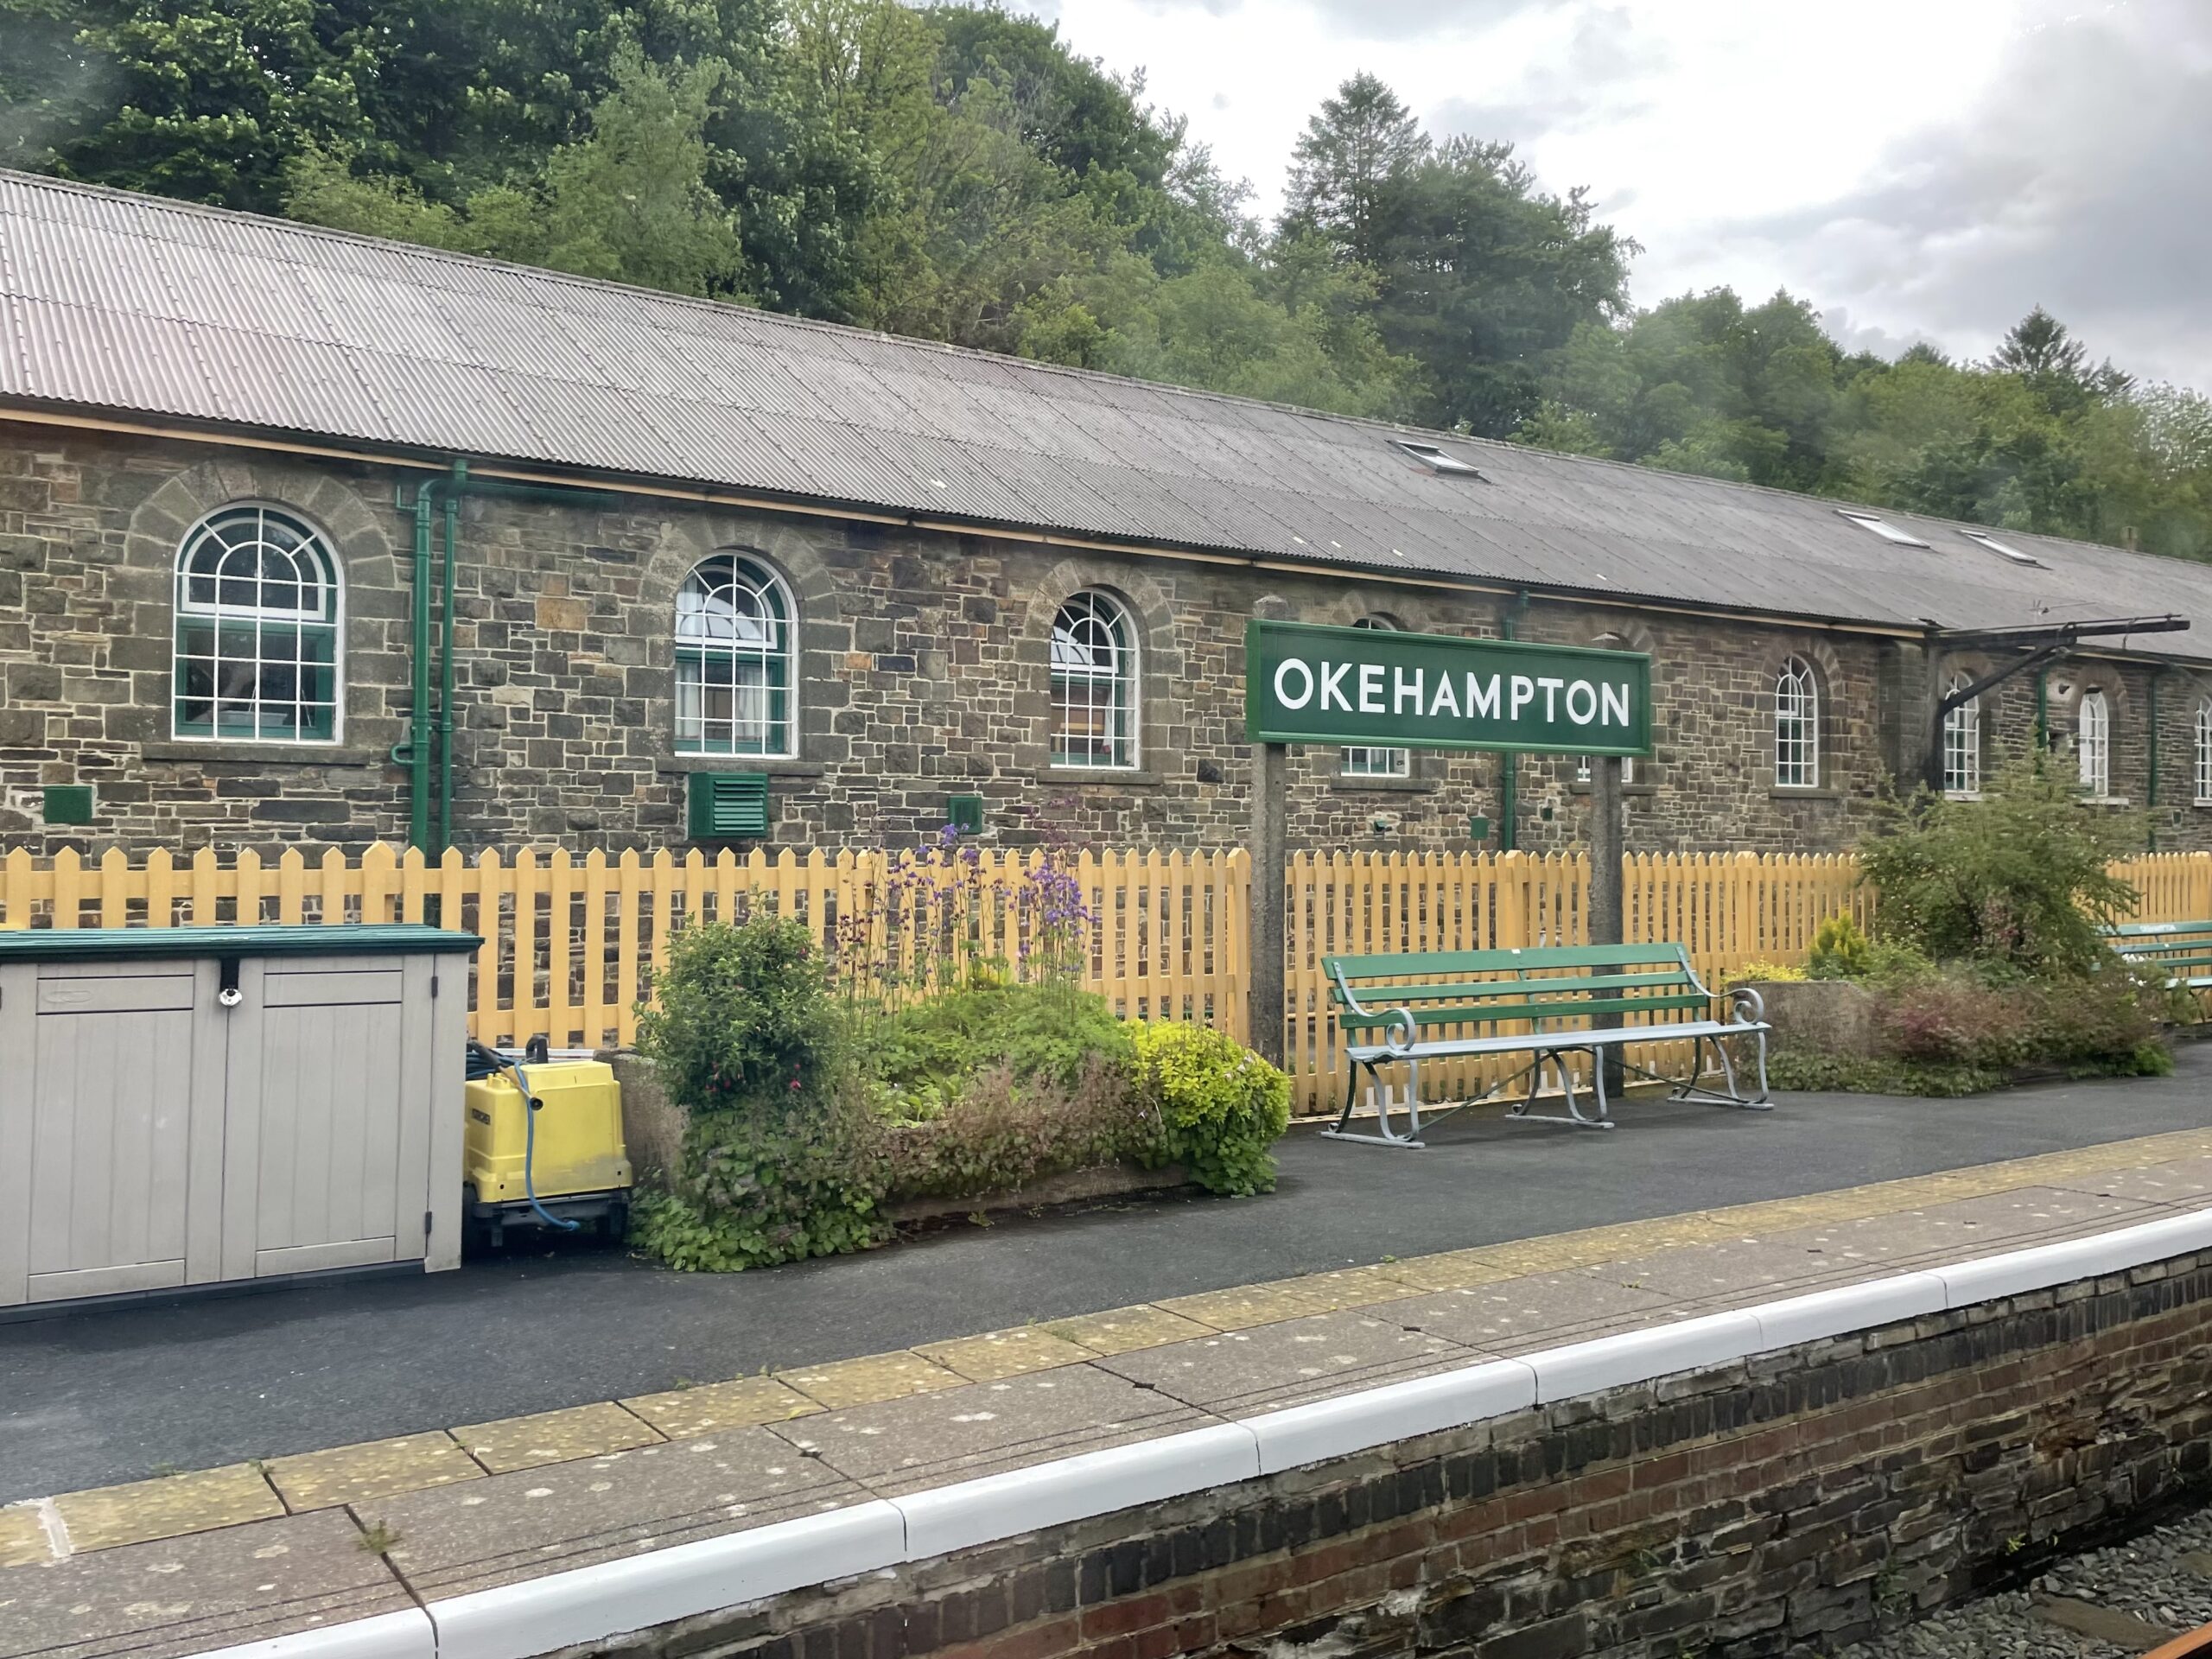 Okehampton Station on the recently reopened Dartmoor Line